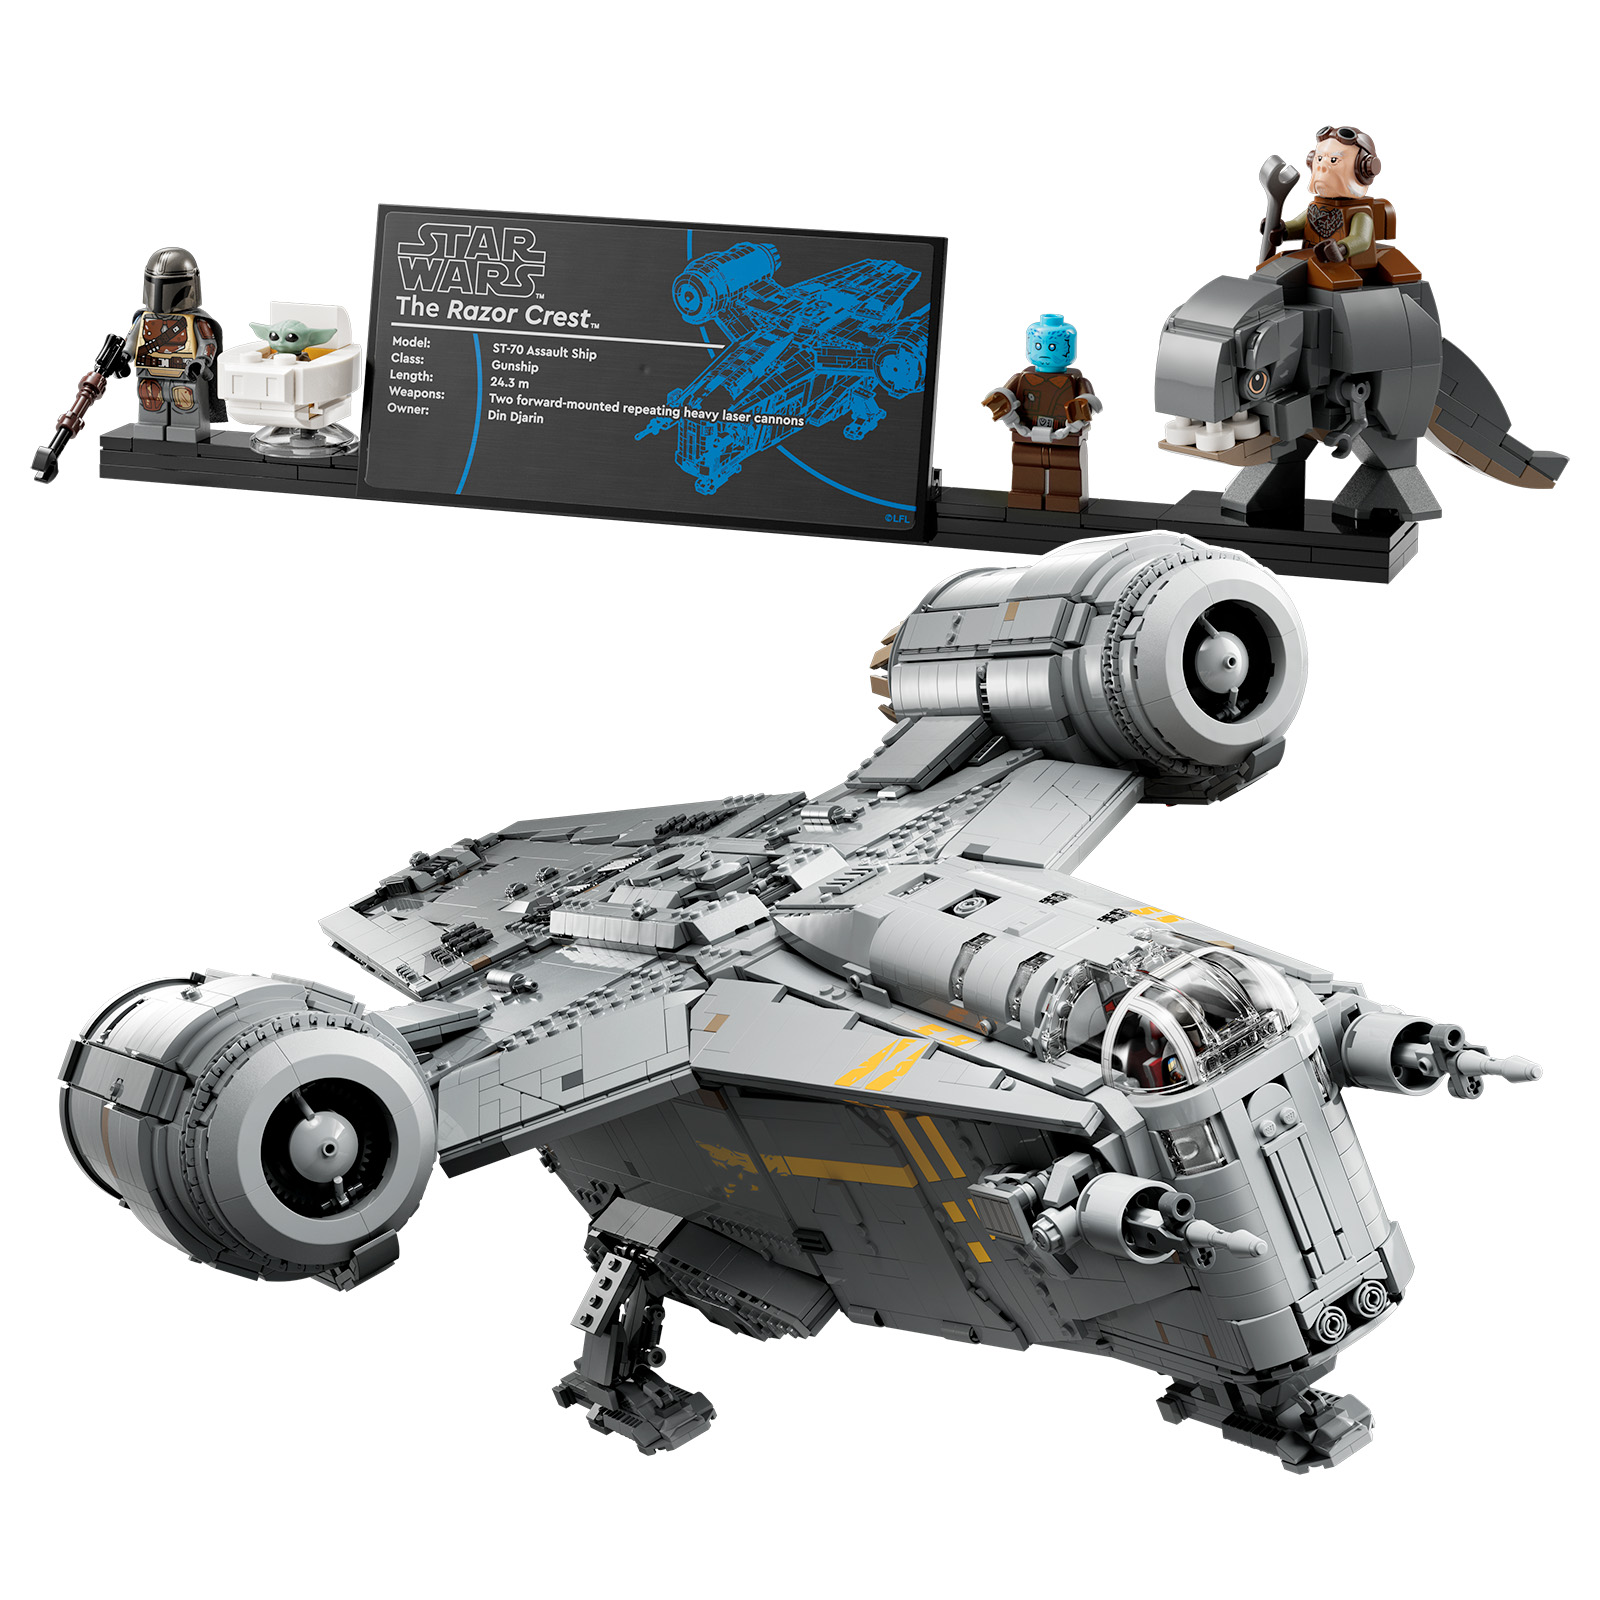 LEGO Star Wars Ultimate Collector Series კომპლექტები: საპრეზენტაციო ფირფიტები მალე დაიბეჭდება ბალიშზე